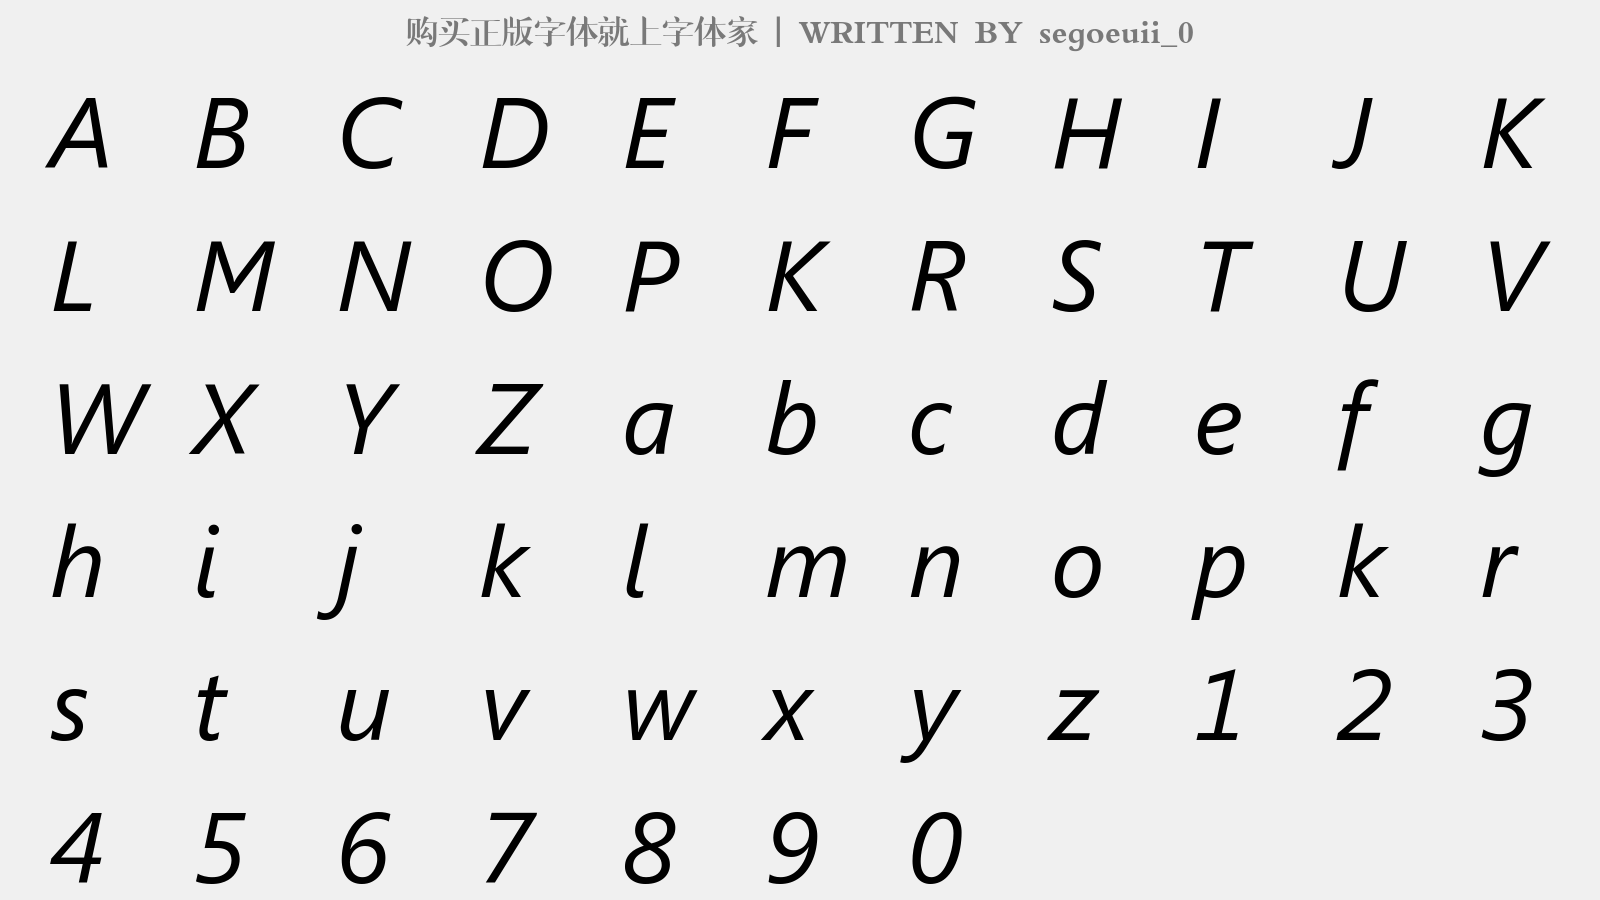 segoeuii_0 - 大写字母/小写字母/数字